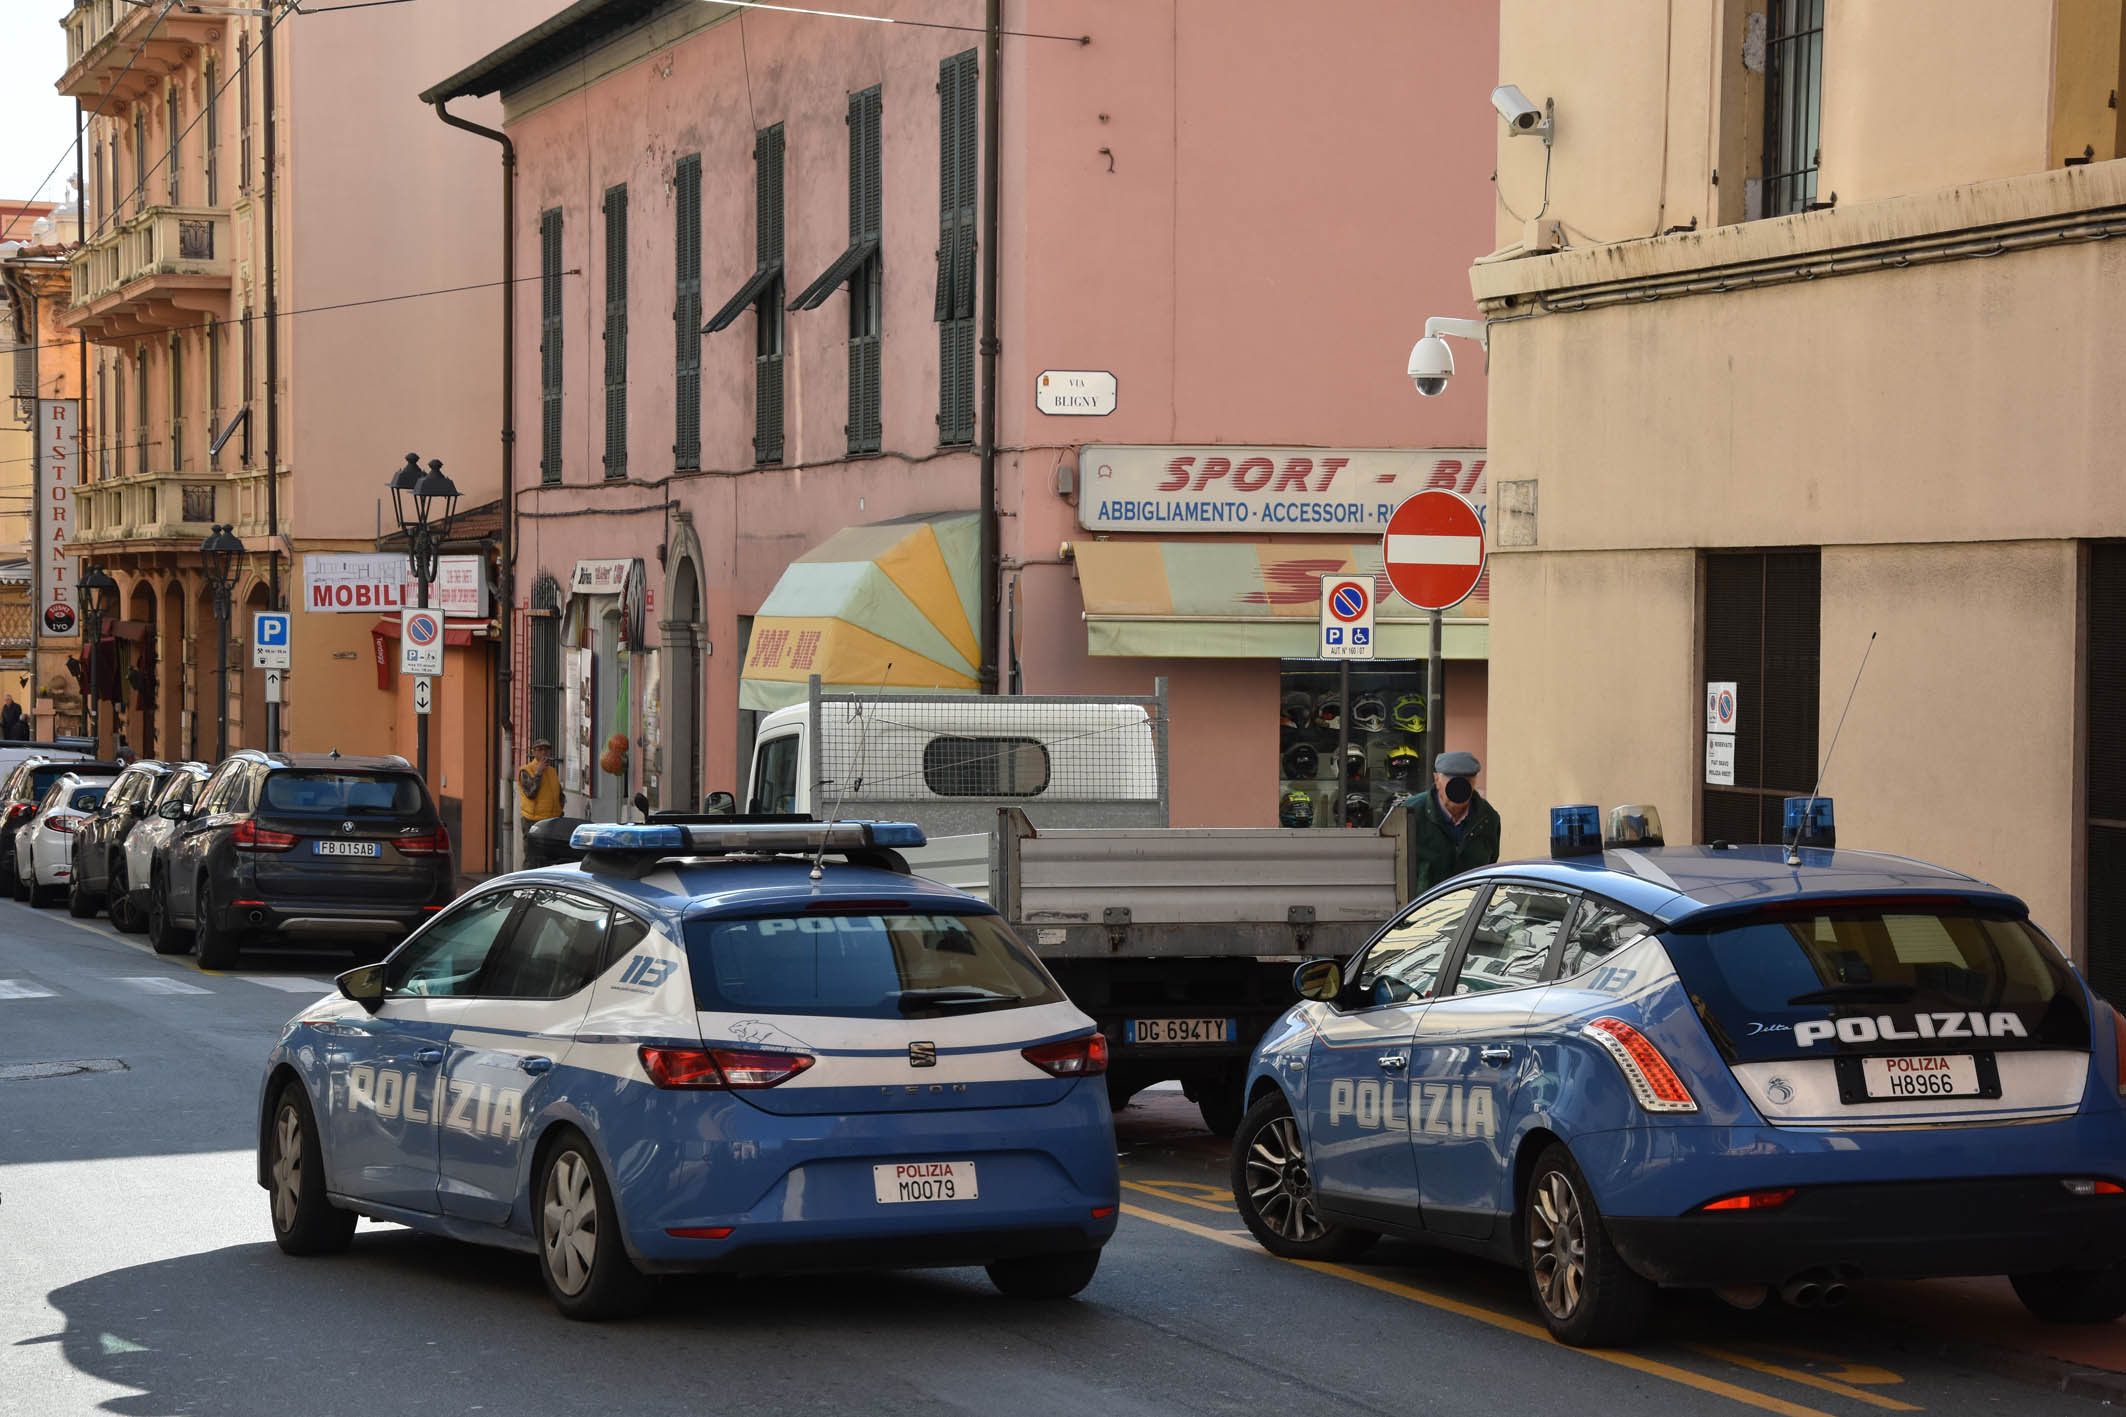 La Polizia di Stato di Ventimiglia arresta uno straniero per il reato di incendio doloso presso l’ex convento delle suore Canonichesse